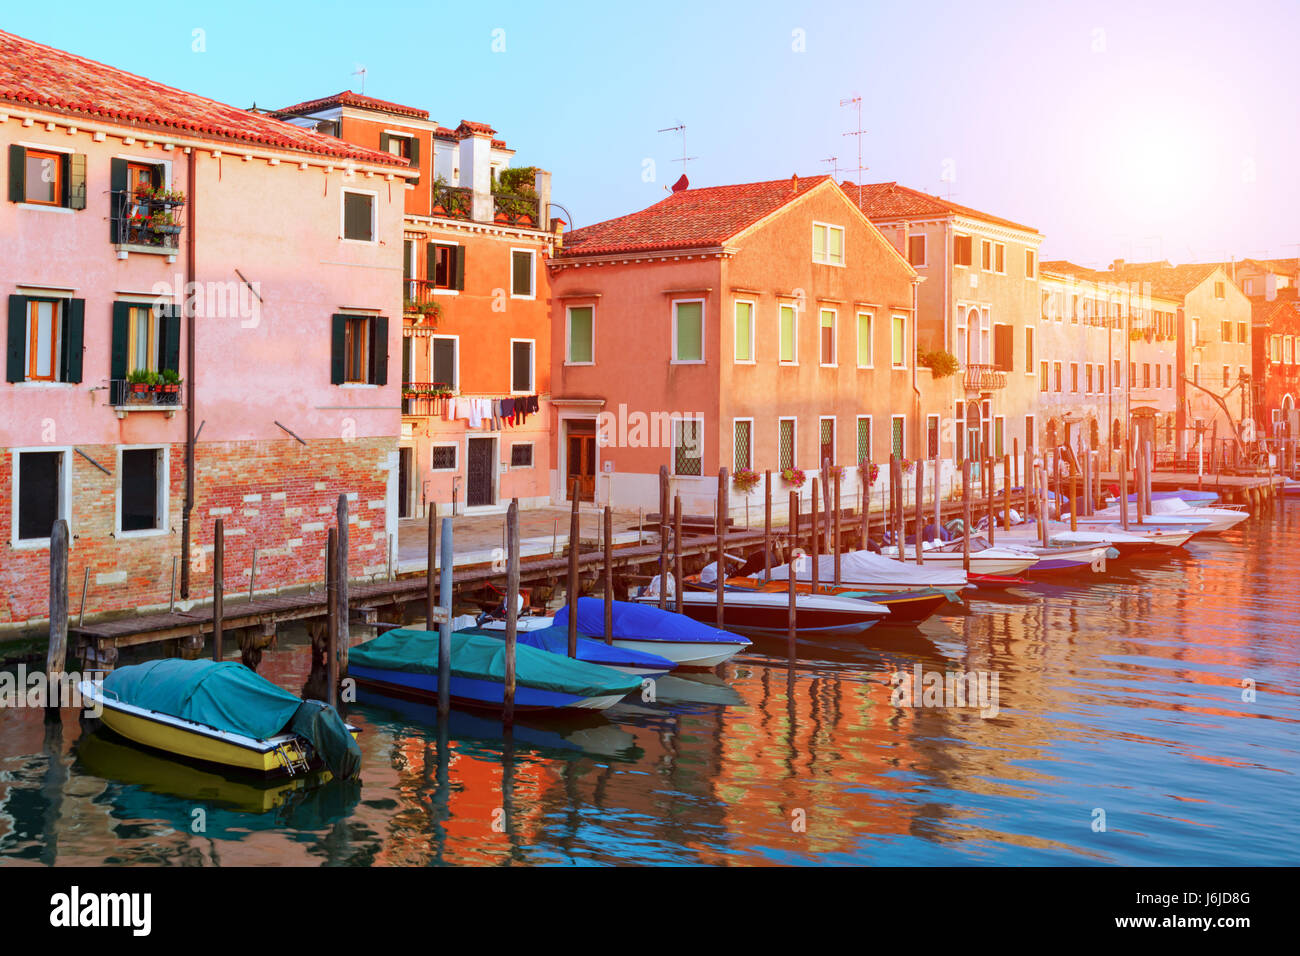 Vue imprenable sur matin Venise. Rangée de bateaux et de maisons colorées. L'Italie, l'Europe Banque D'Images